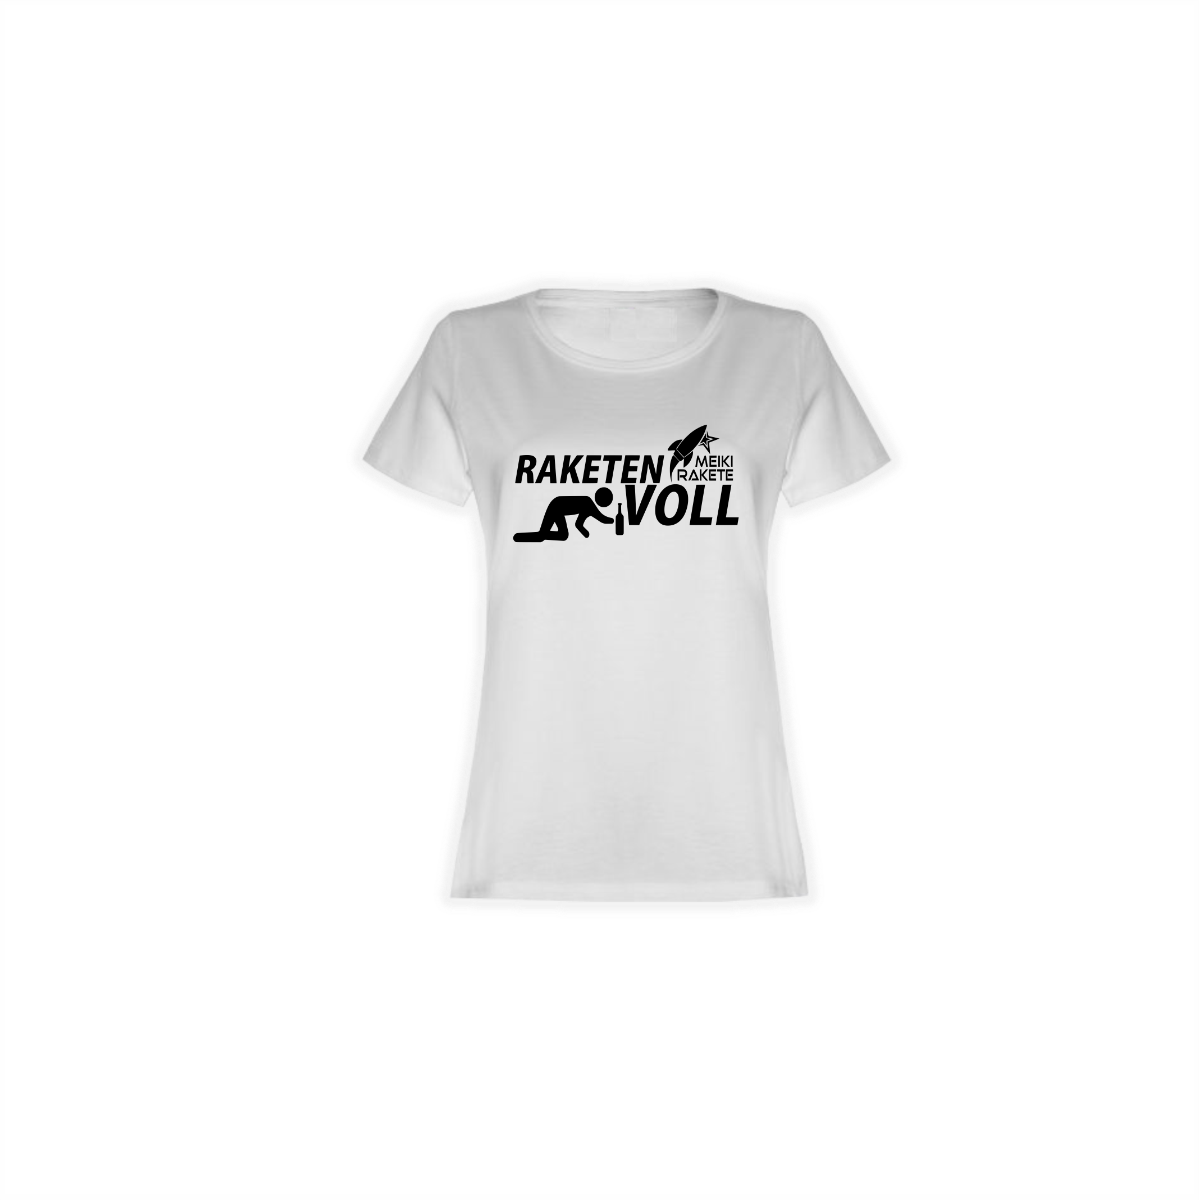 Girly-Shirt "RAKETENVOLL" weiß